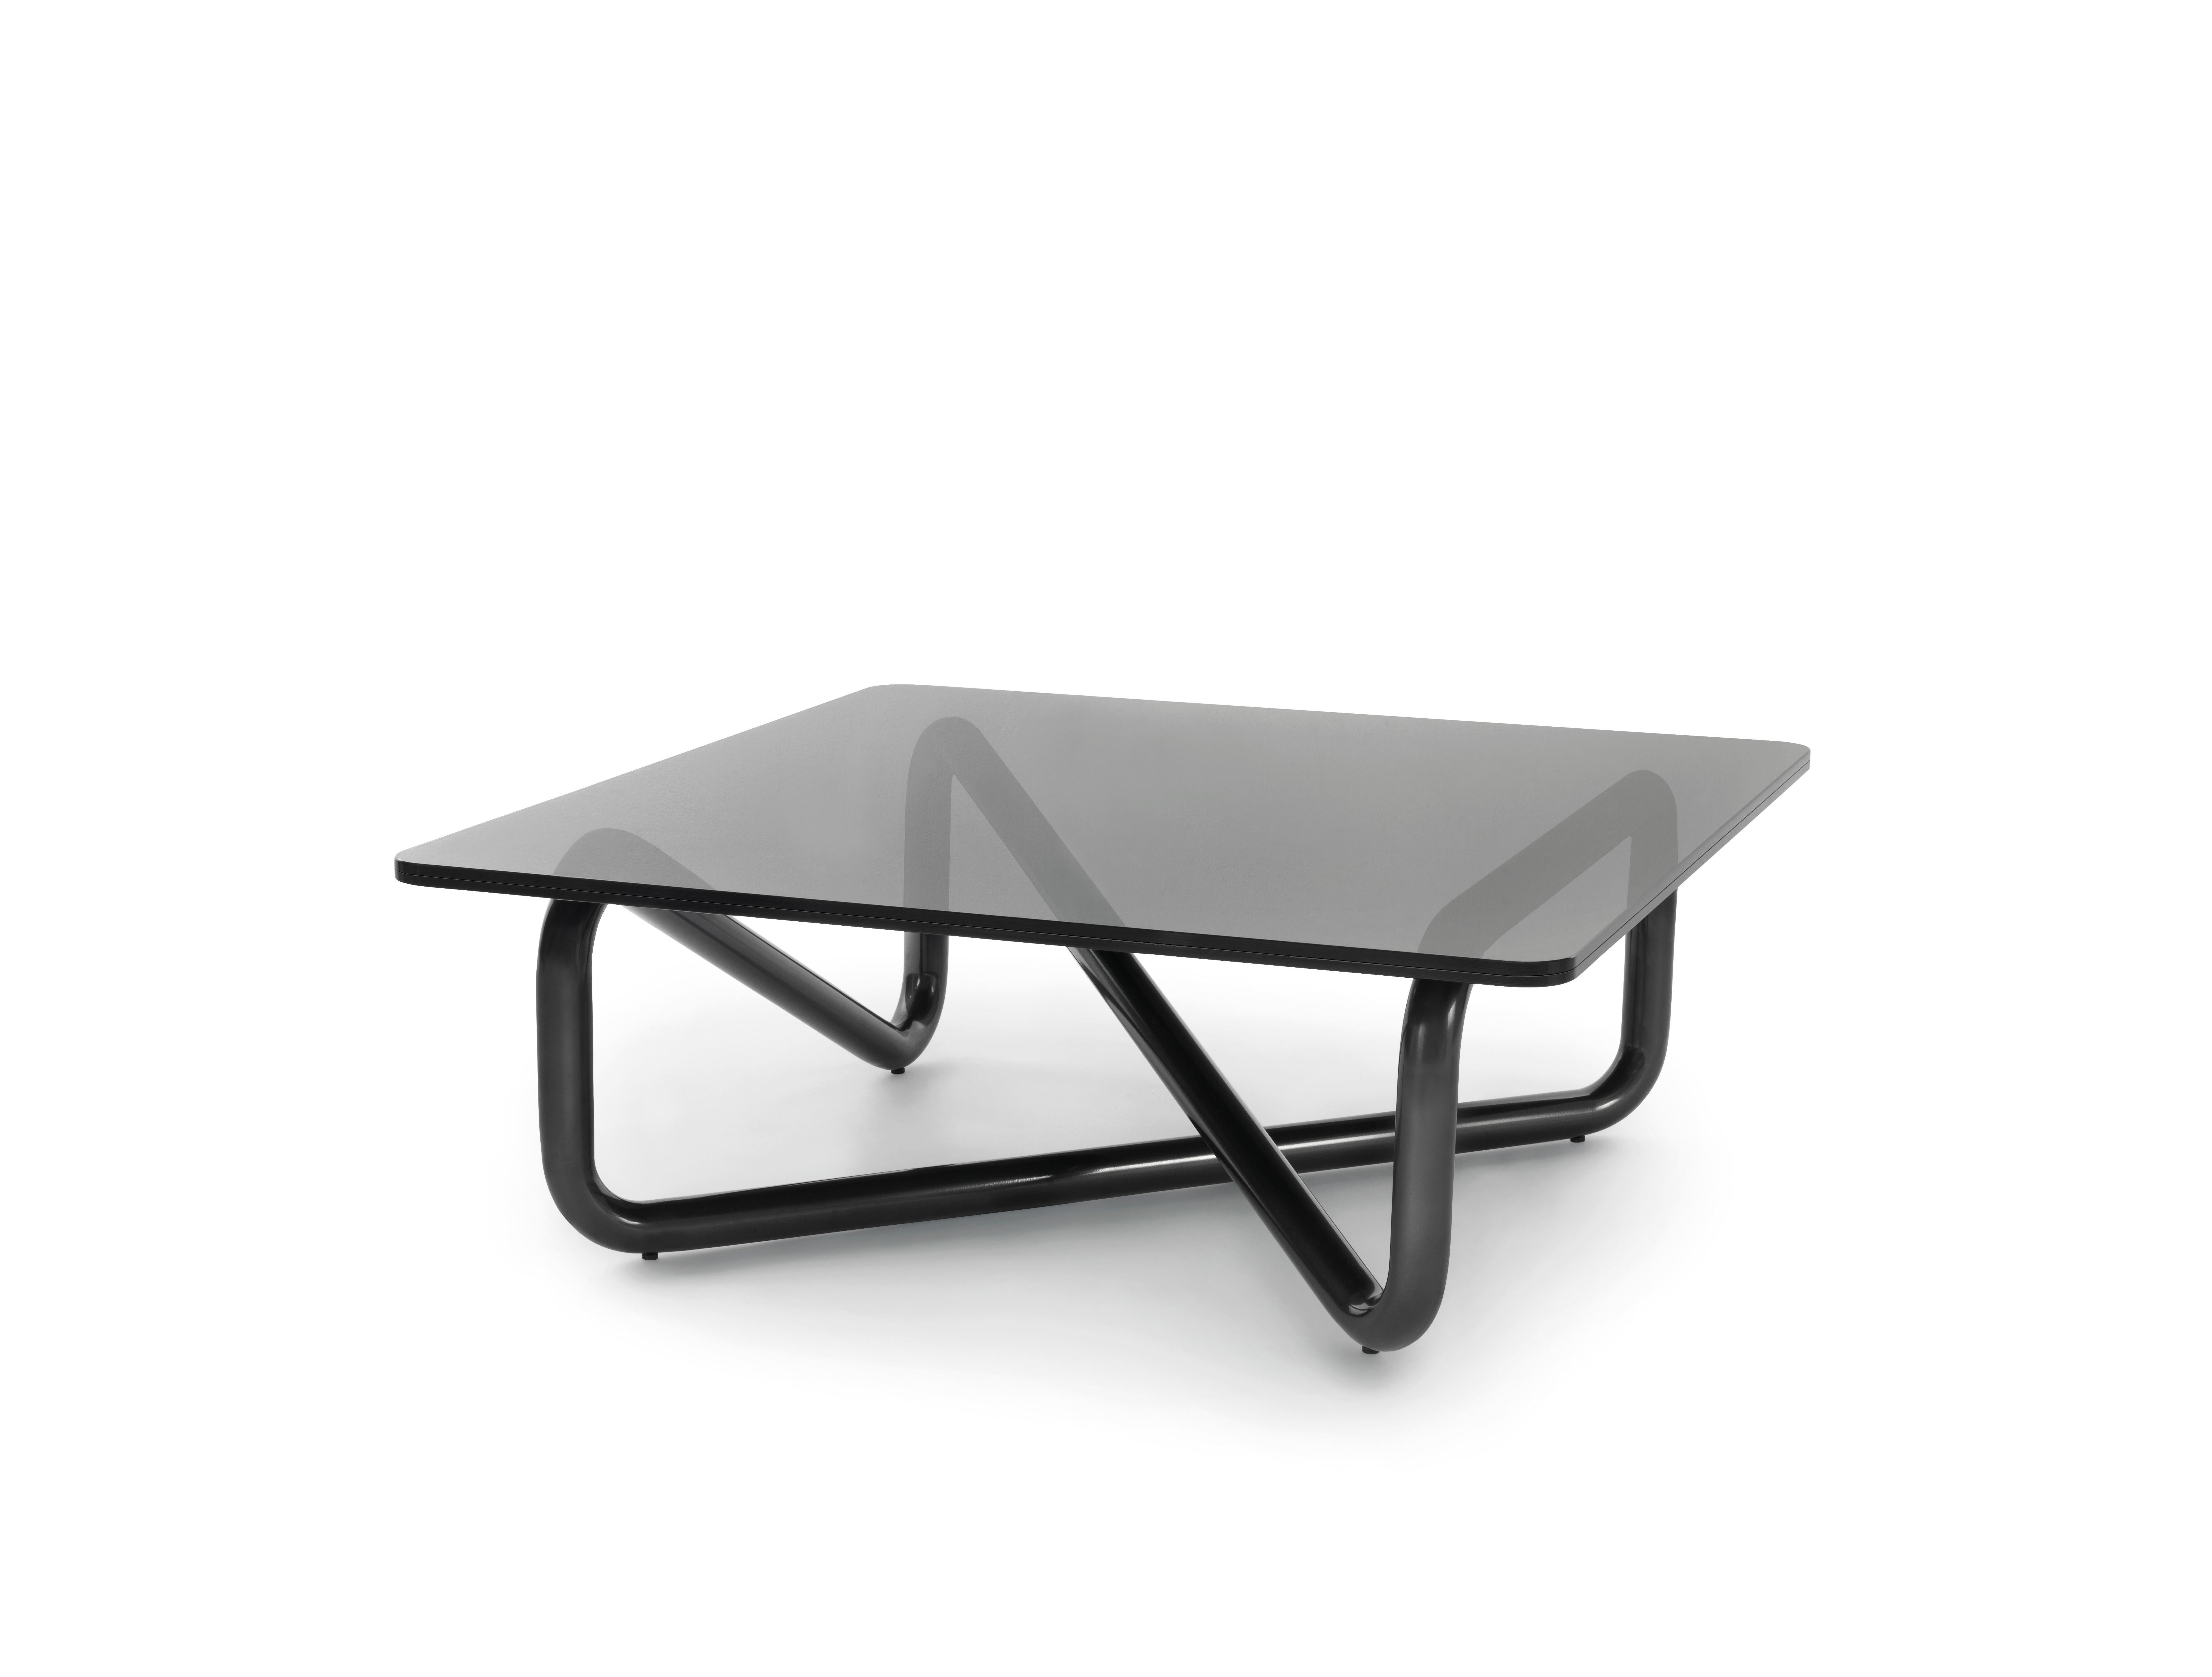 Petite table Arflex Infinity en verre fumé avec base grise par Claesson Koivisto Rune. Le symbole mathématique de l'éternité est une figure qui ressemble à un chiffre 8 horizontal. L'analogie est bien sûr que si vous suivez la ligne, il vous faudra